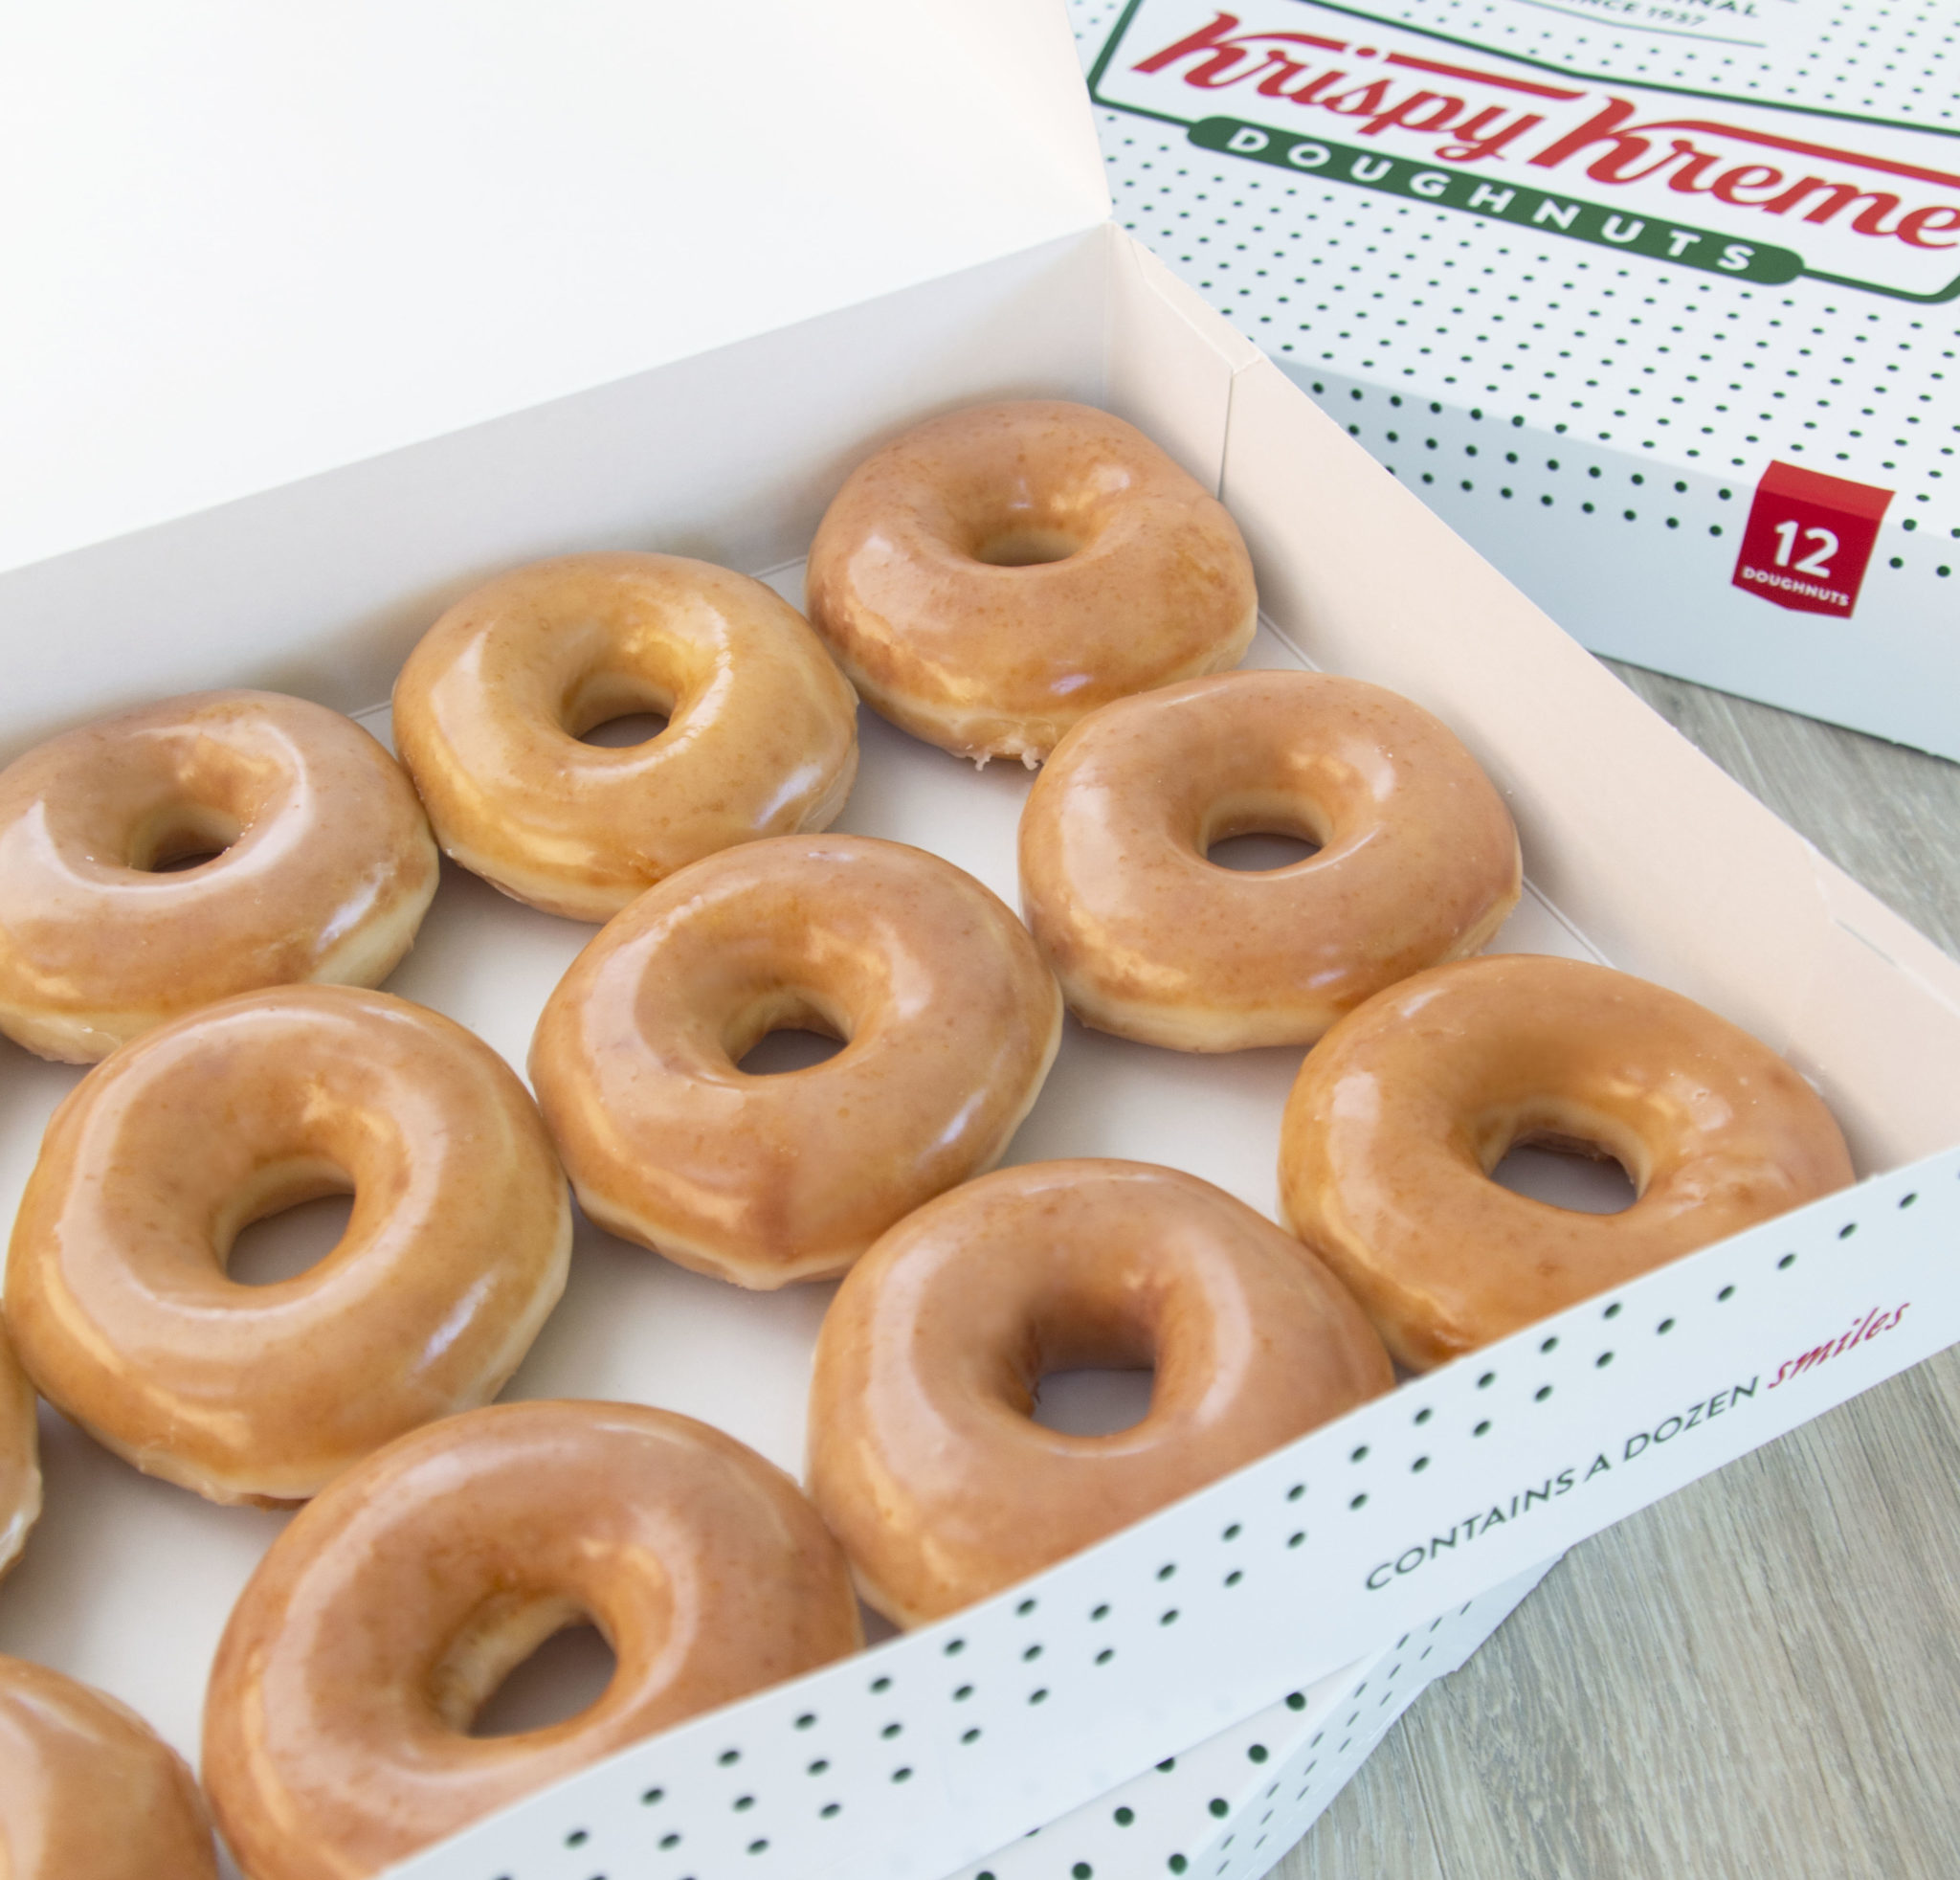 Reseñas de Krispy Kreme Digital Dozens: Compartir experiencias de recaudación de fondos